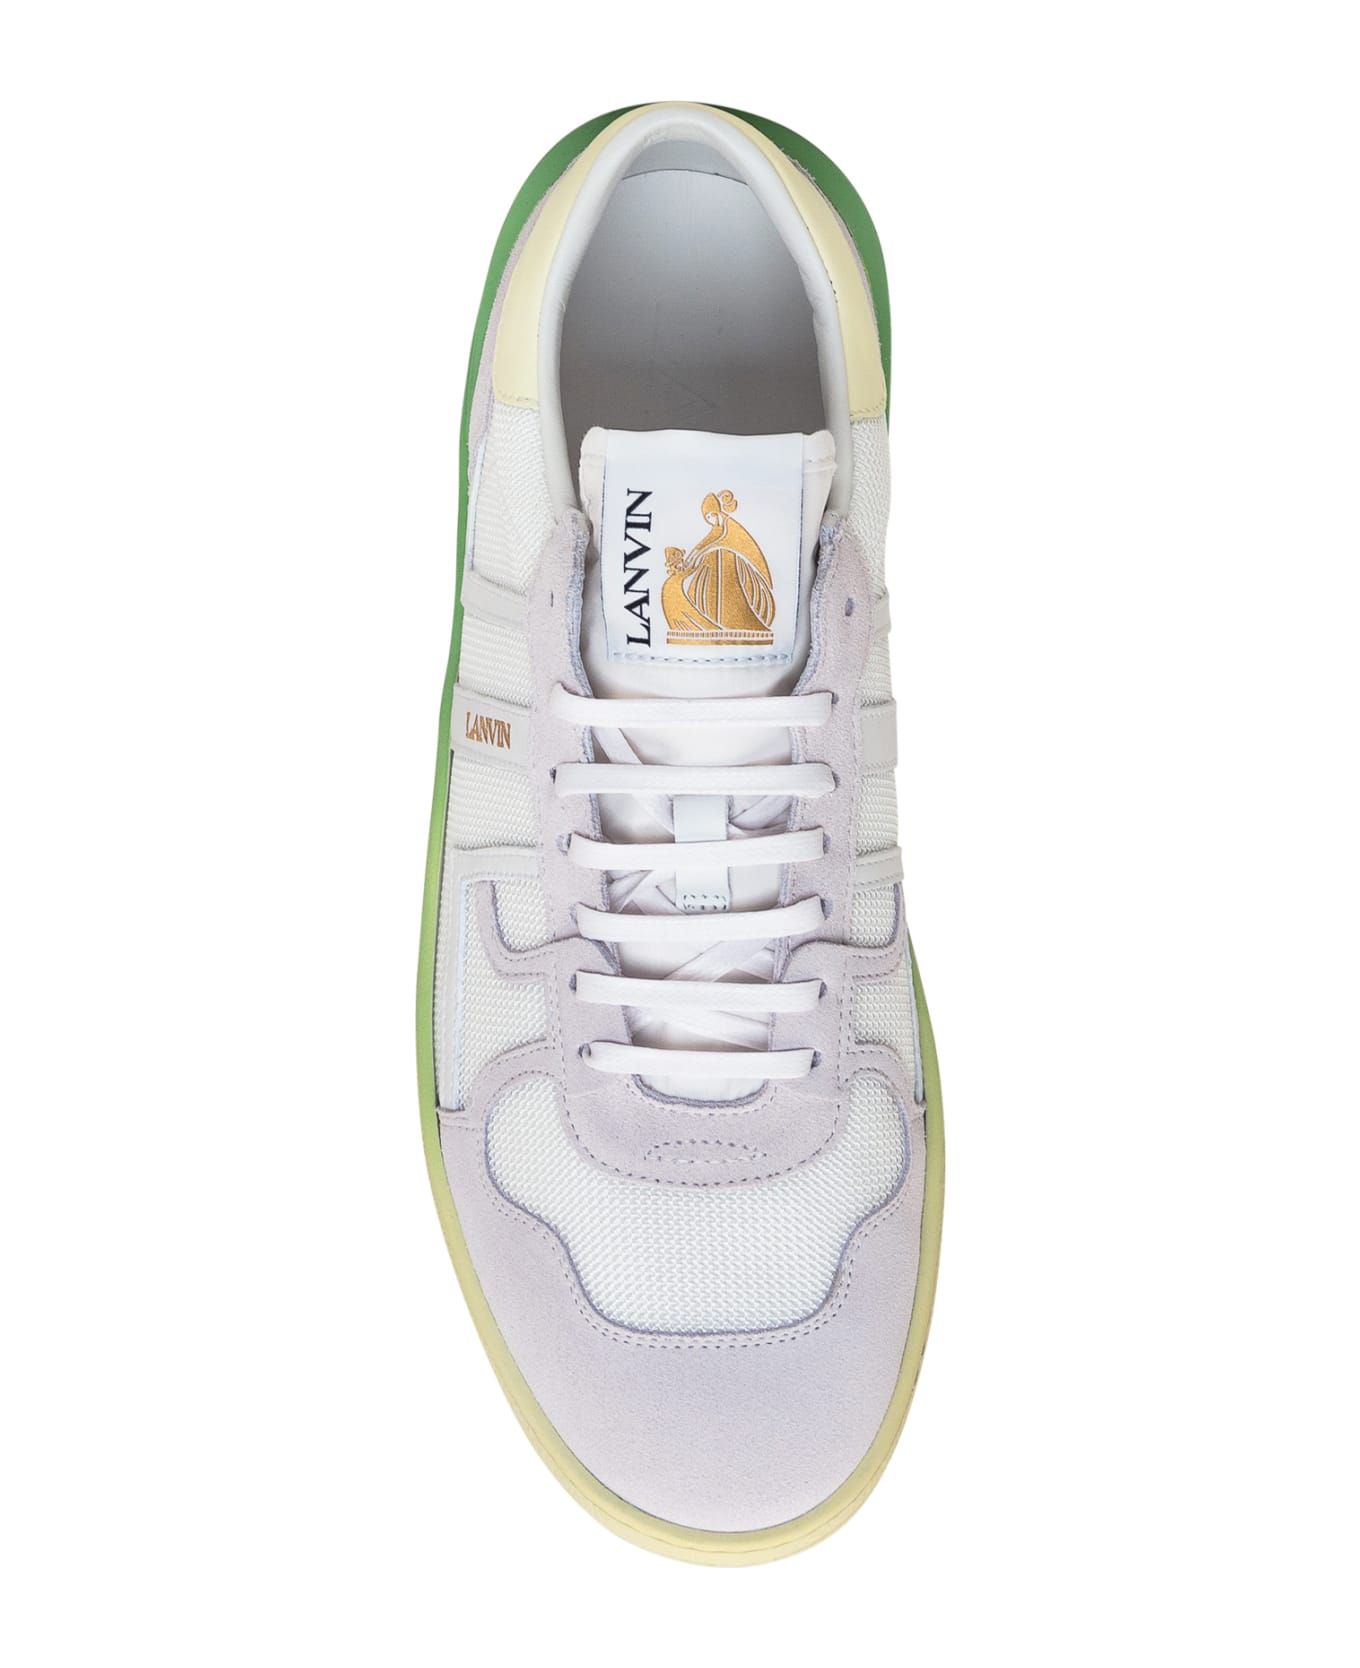 Lanvin Clay Sneaker - WHITE/YELLOW